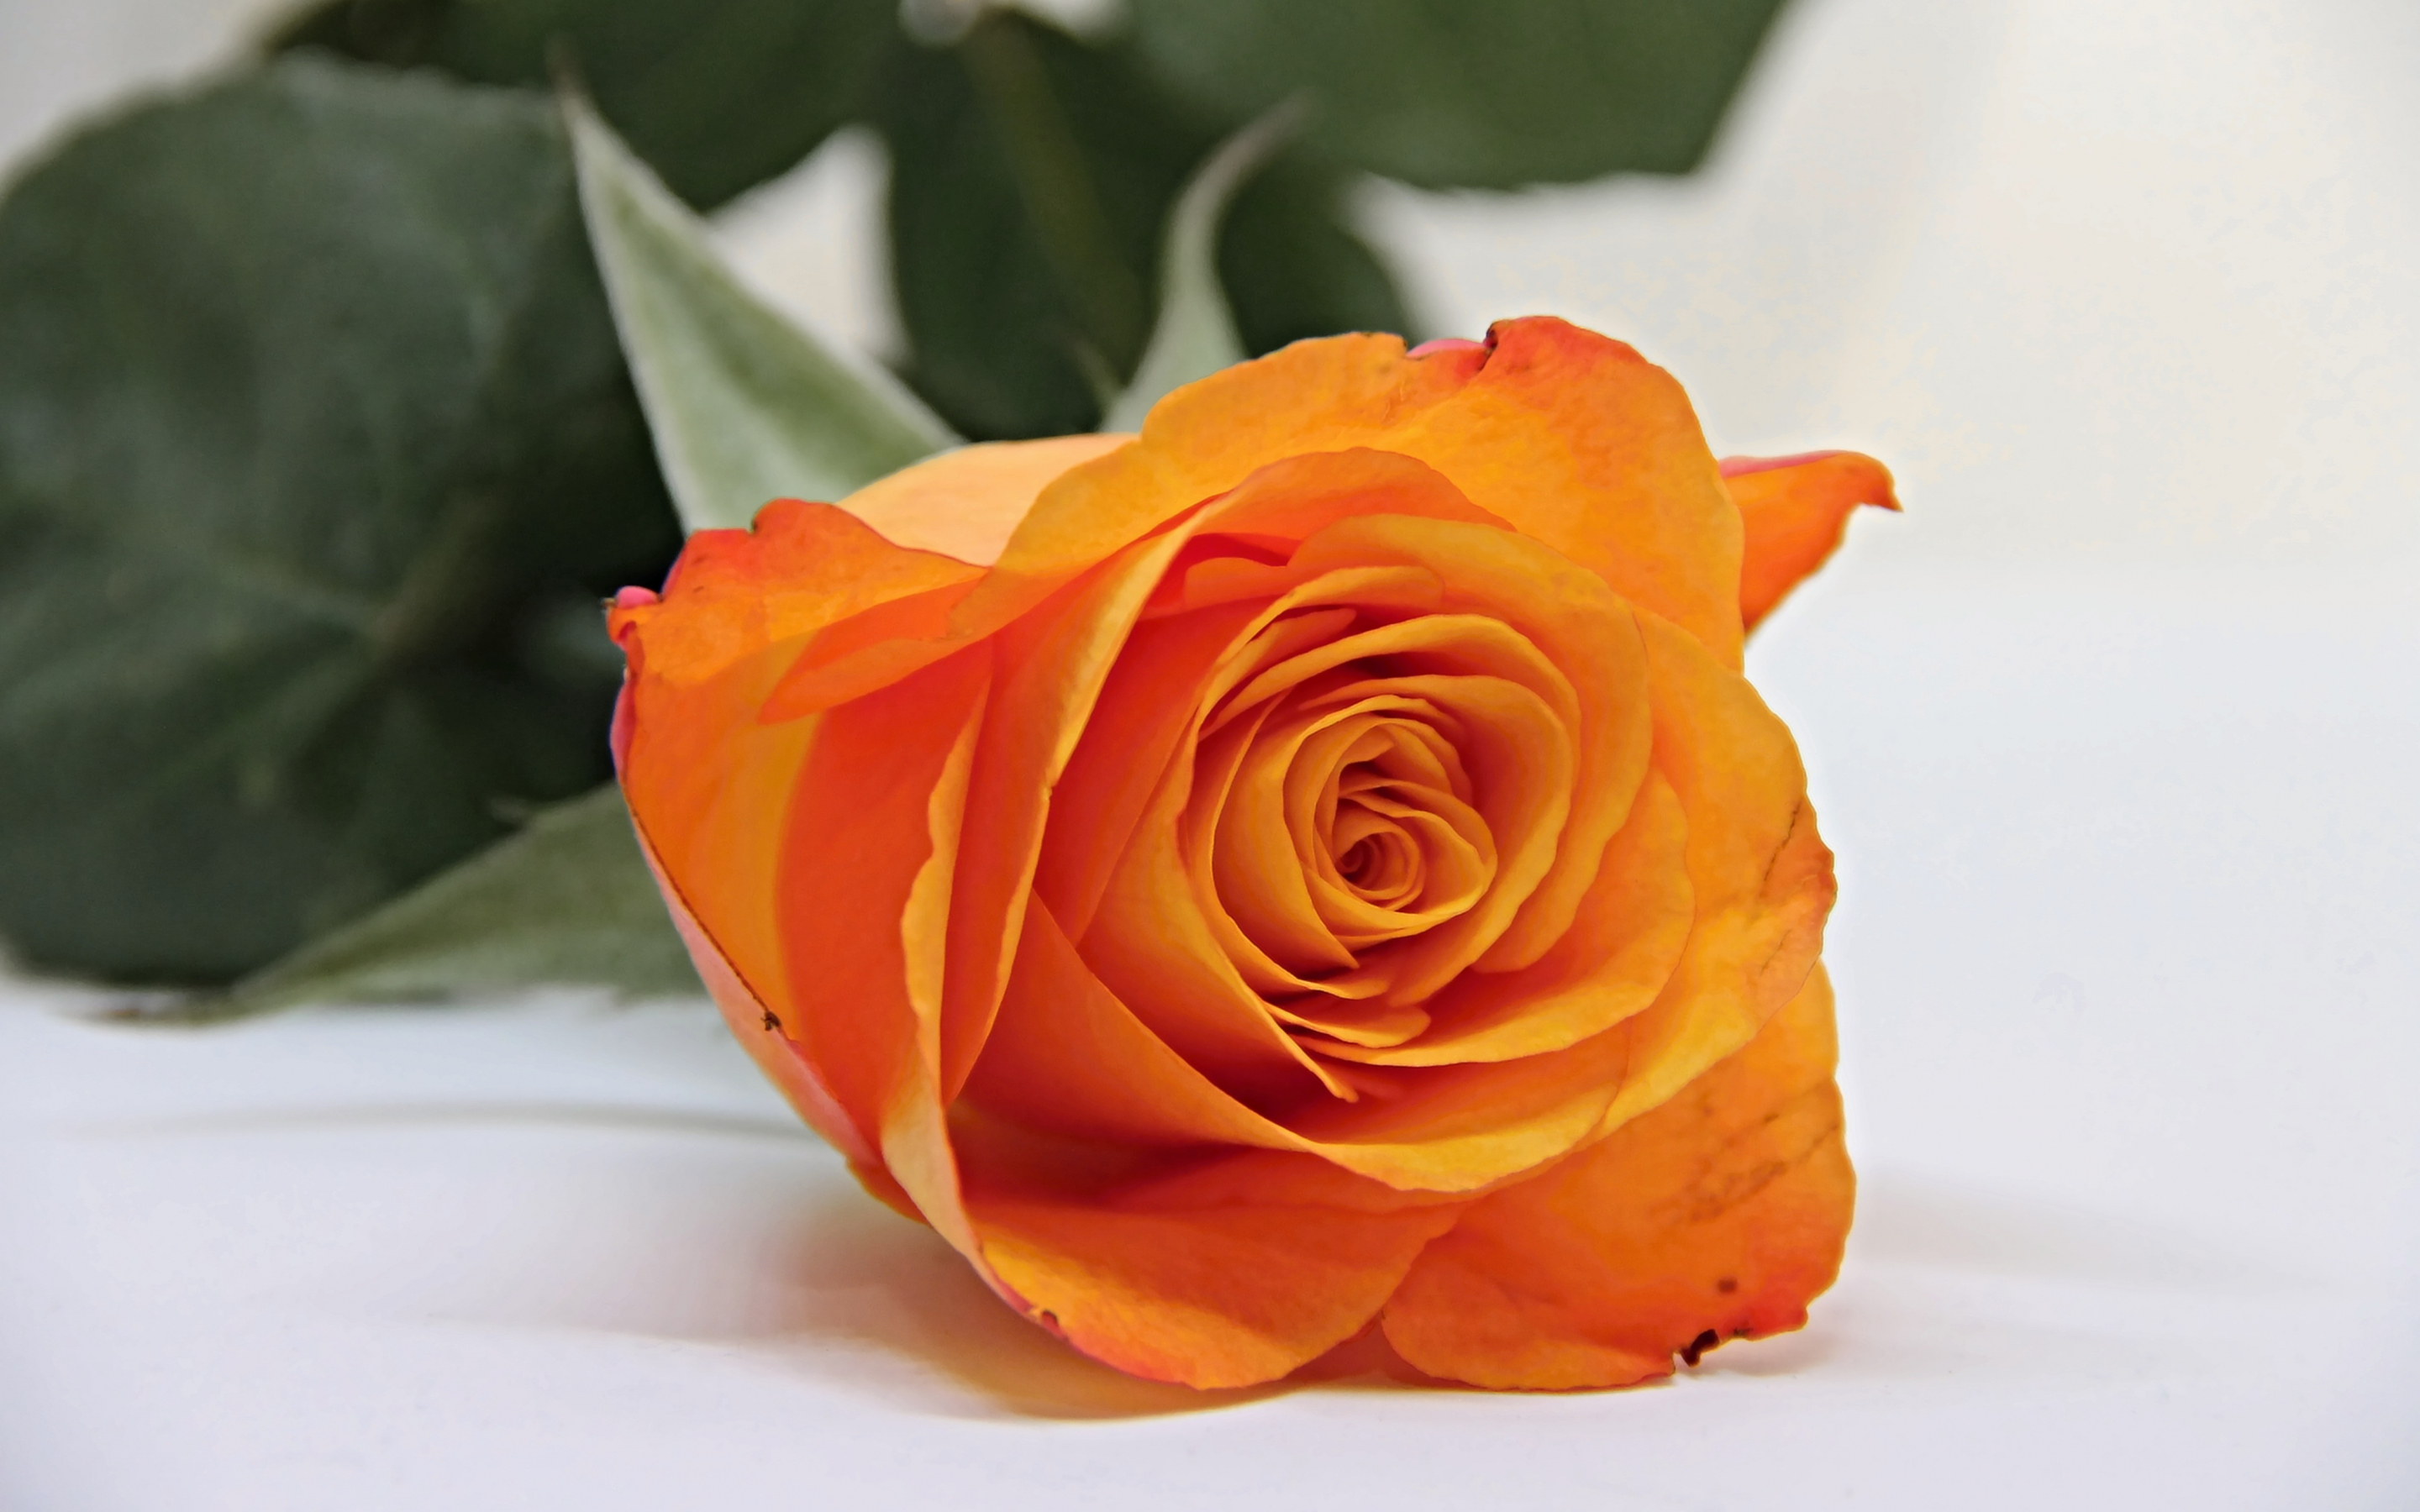 Orange rose, bud, flower, 2880x1800 wallpaper